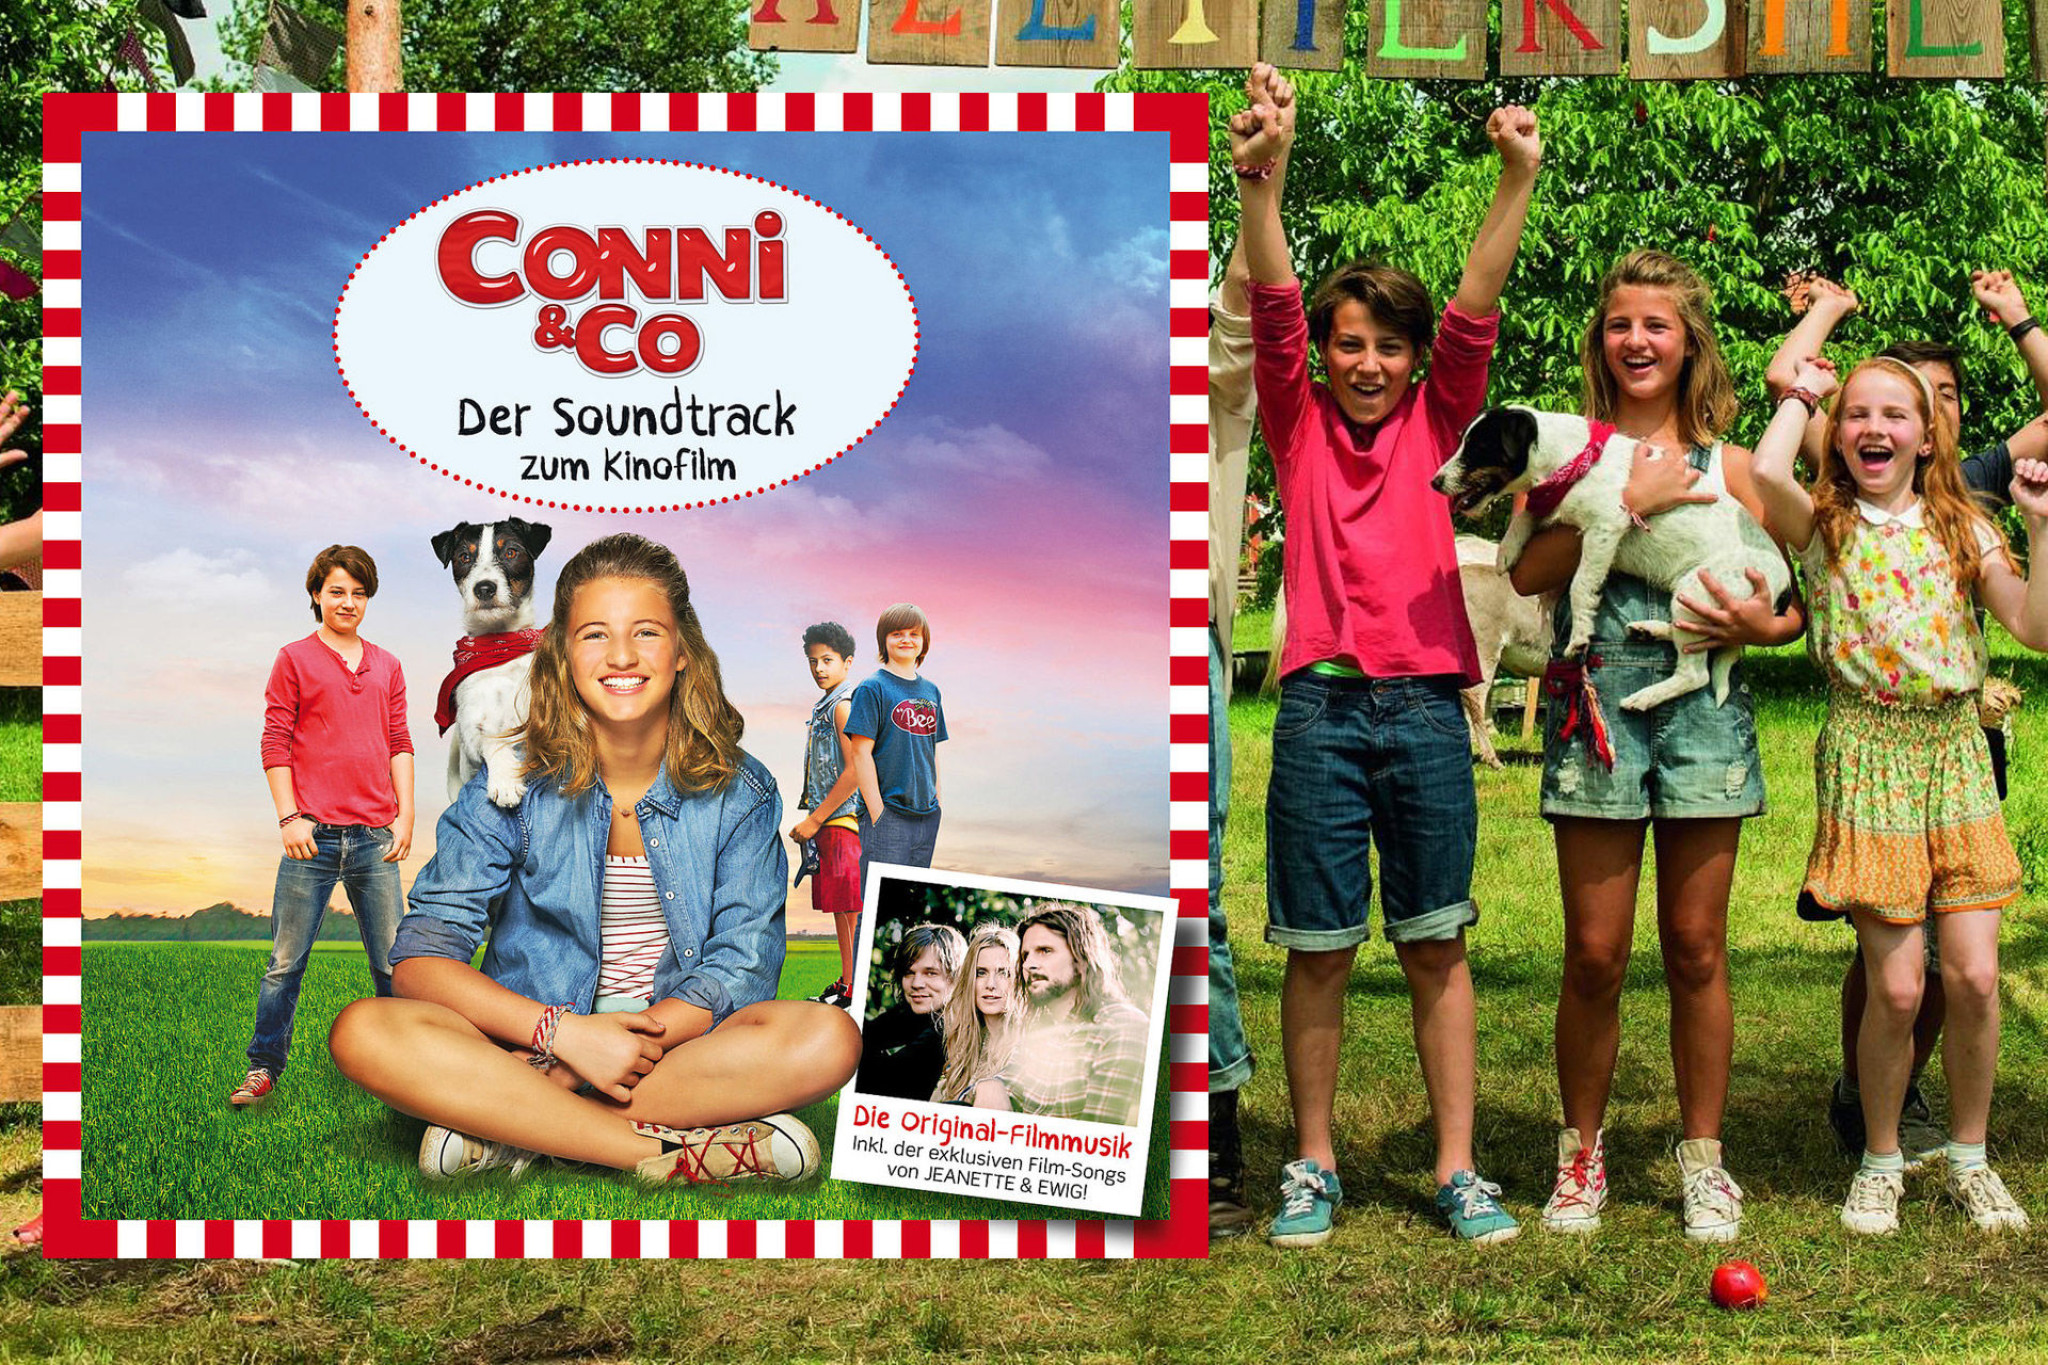 Conni & Co Soundtrack News